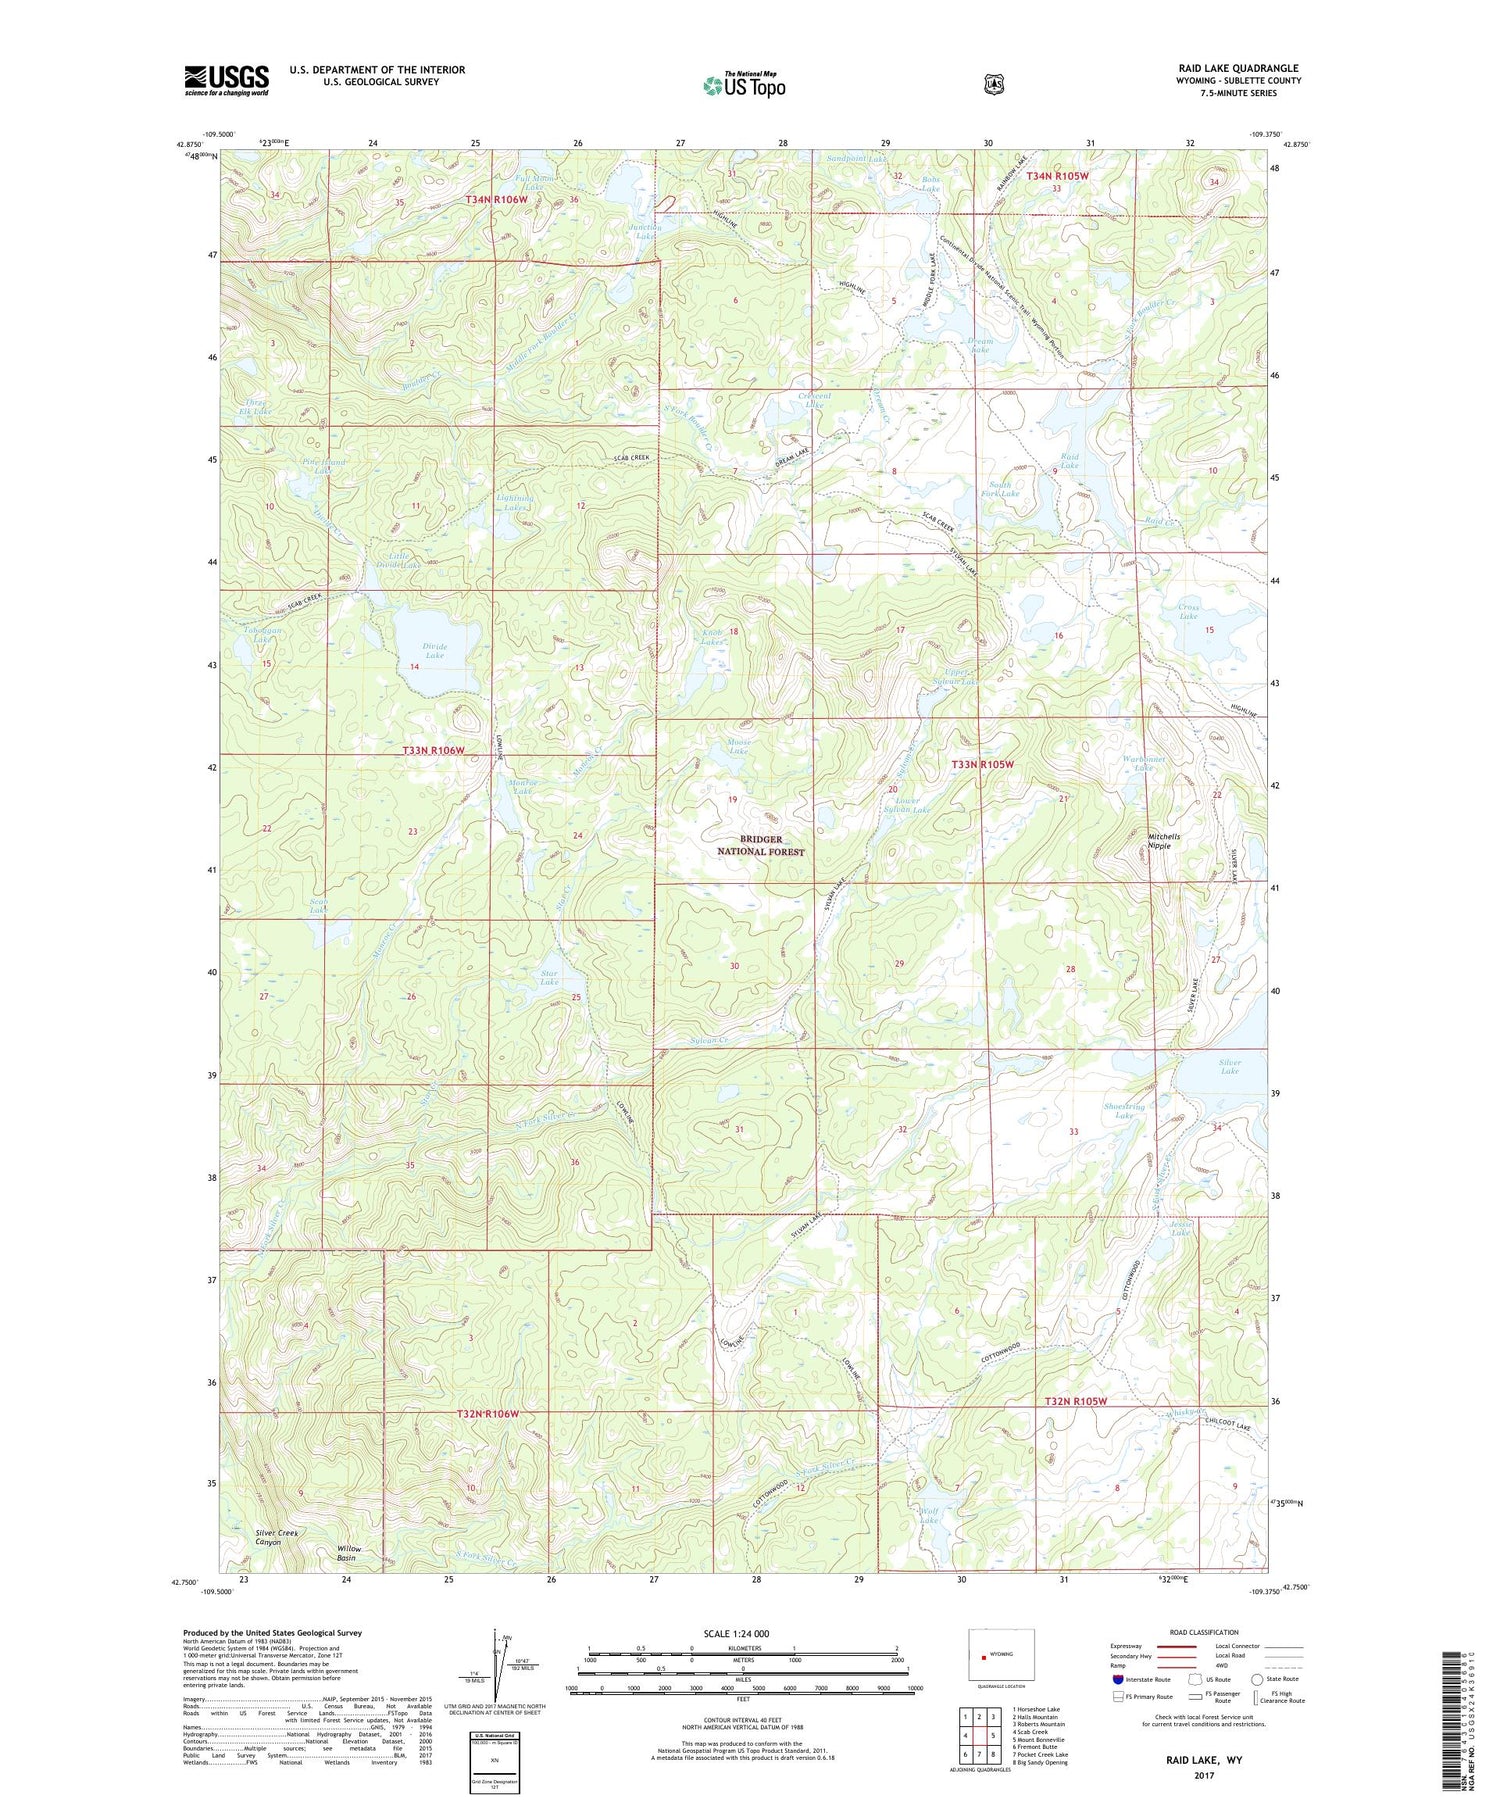 Raid Lake Wyoming US Topo Map Image